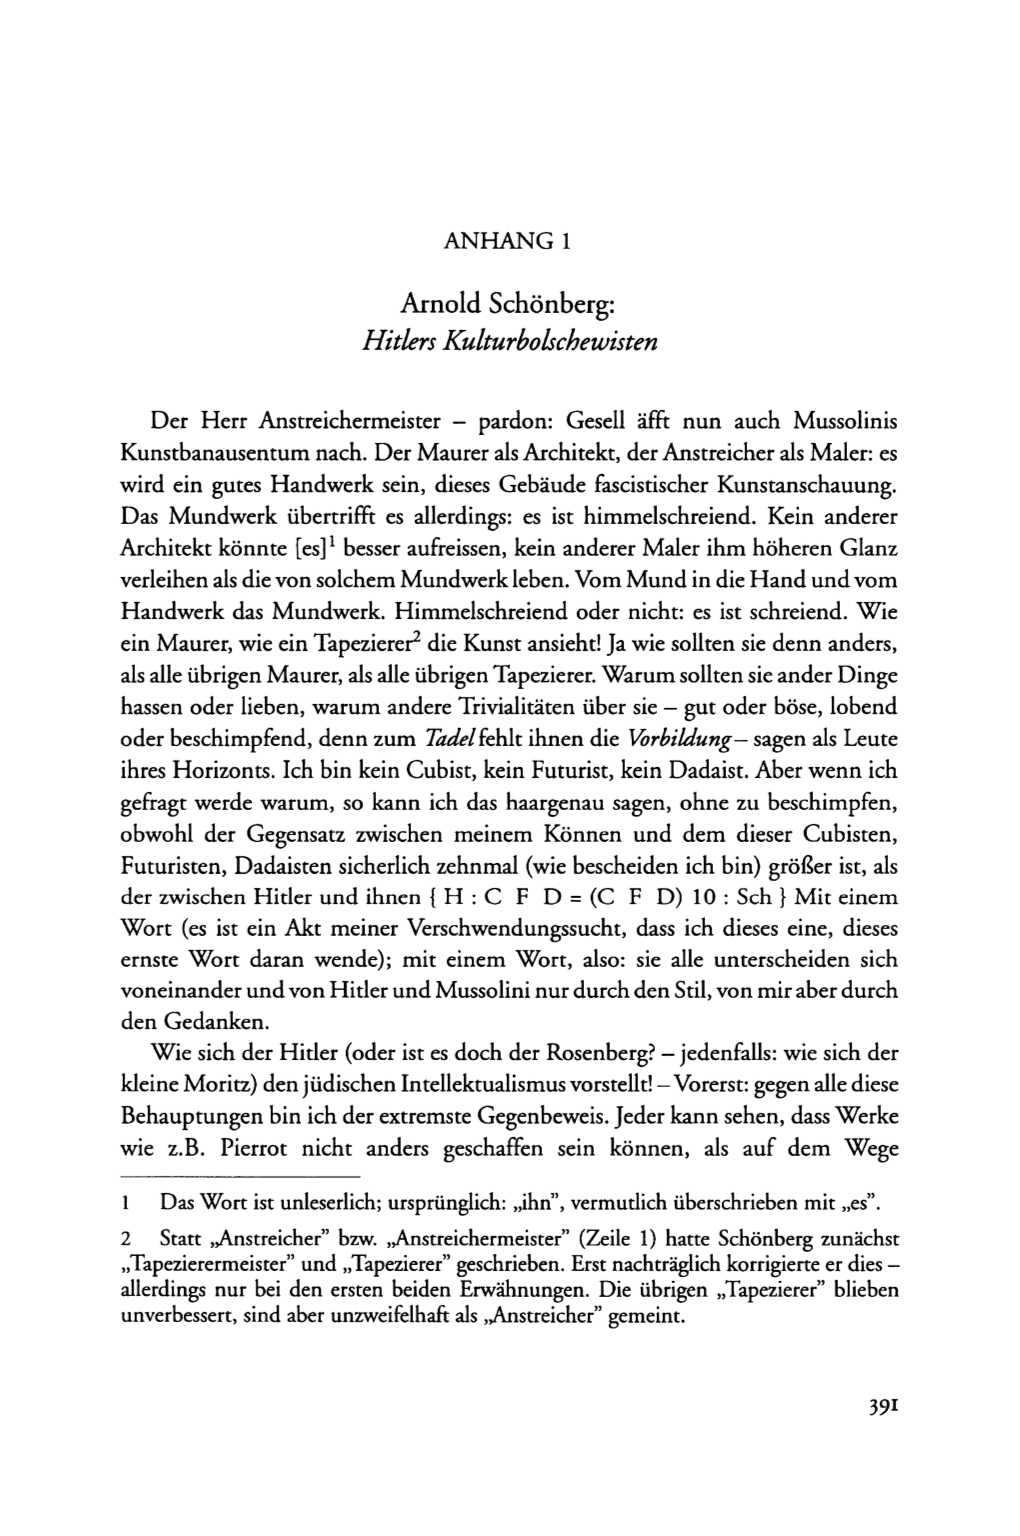 Arnold Schönberg: Hitlers Kulturbolschewisten